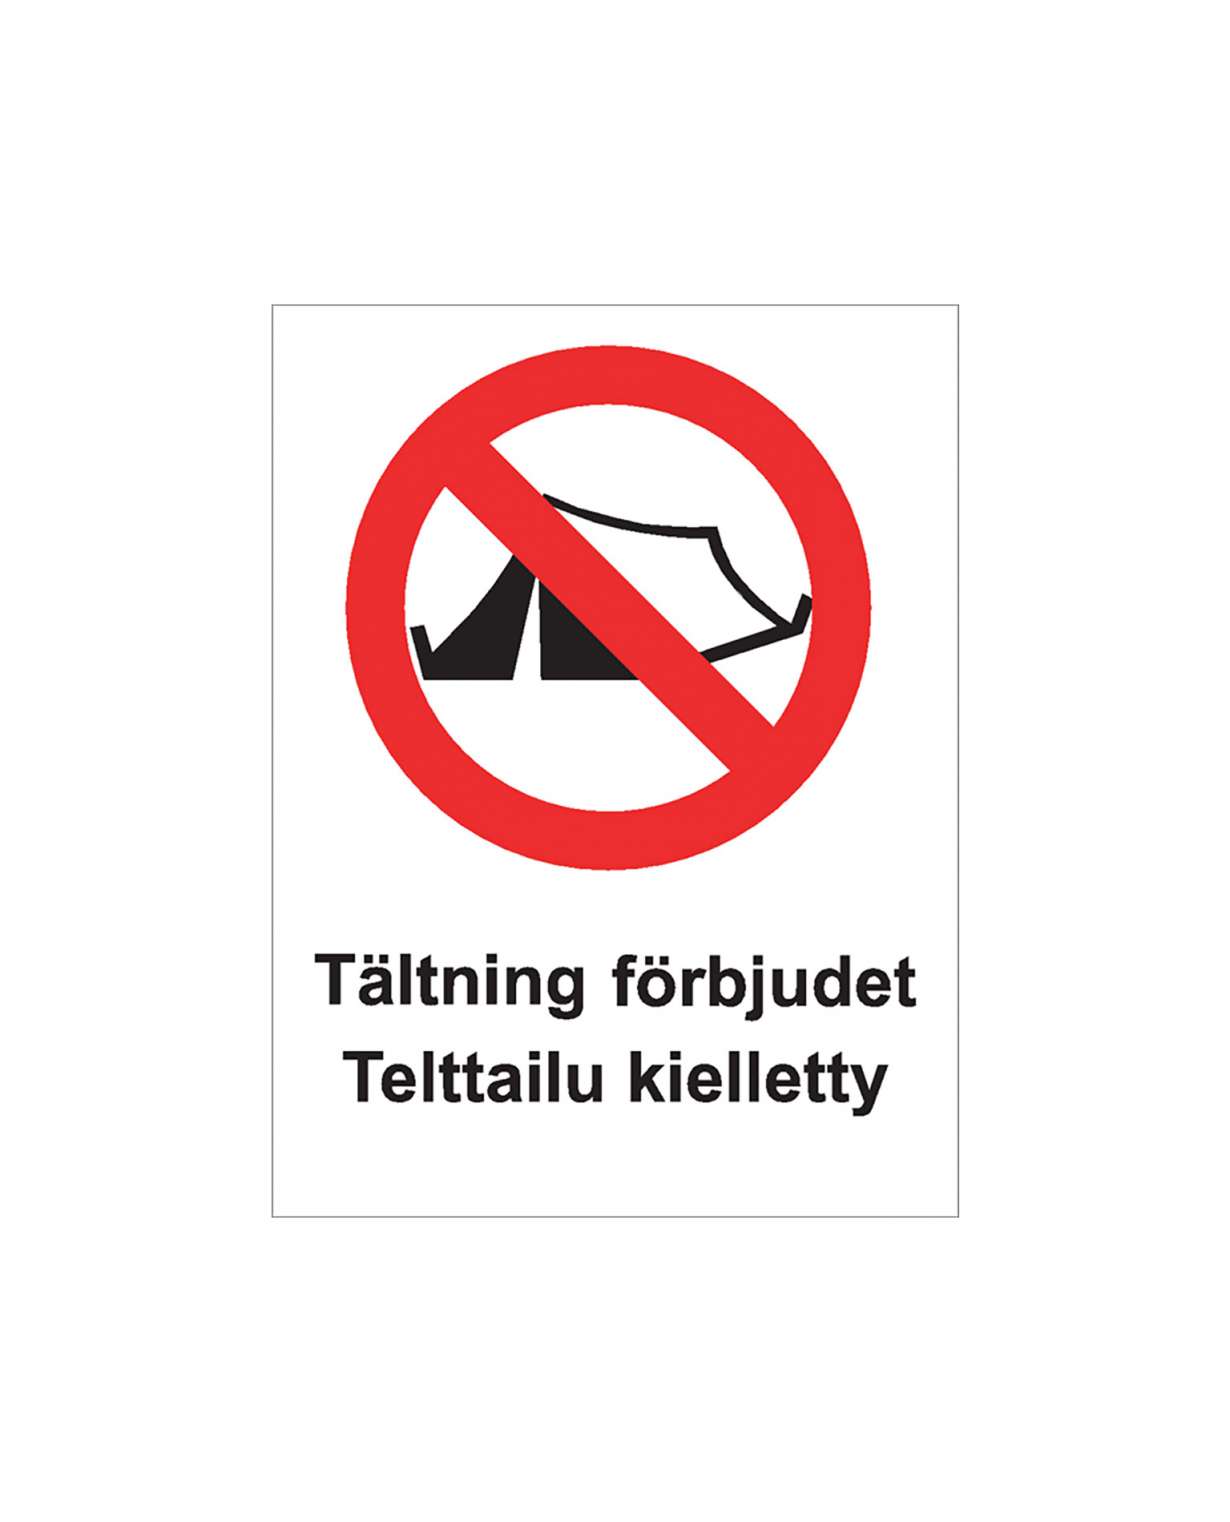 Telttailu kielletty ruotsi, Ibond alumiini, 200x300 mm